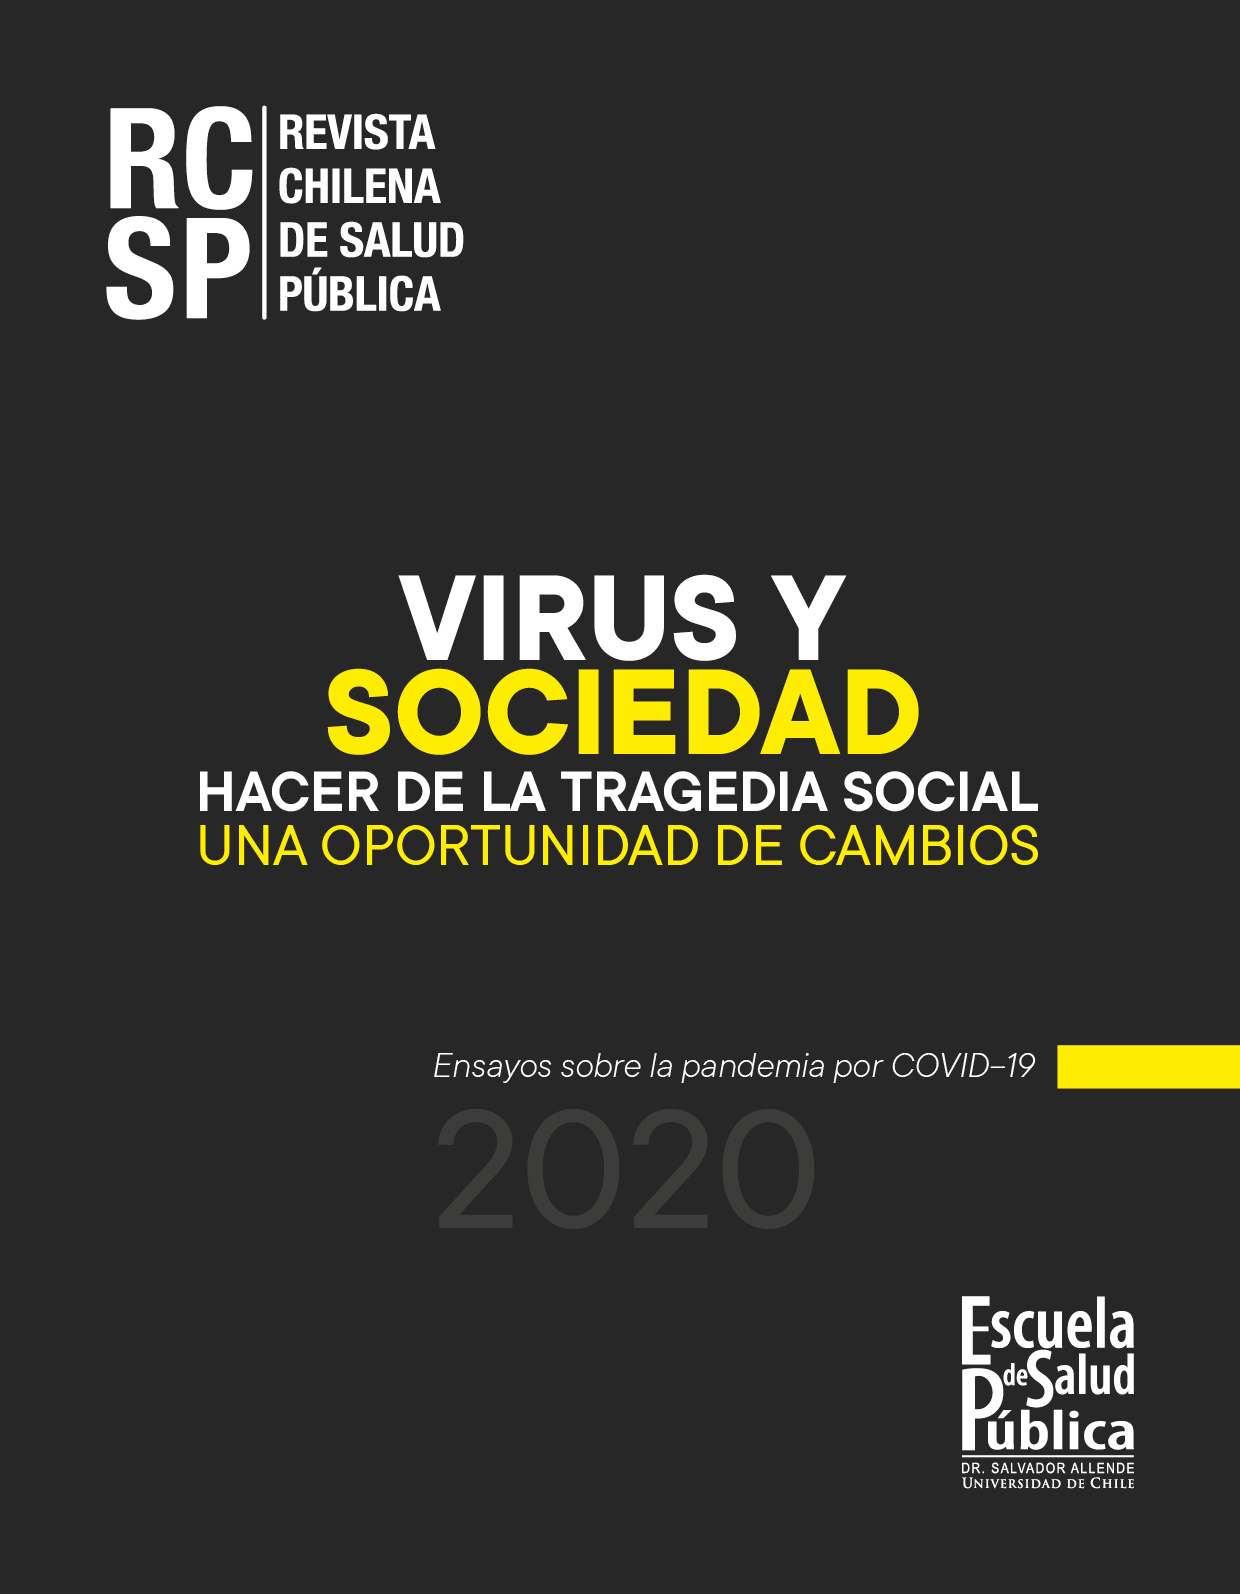 							View 2020: Número especial "Virus y Sociedad: hacer de la tragedia social una oportunidad de cambios"
						